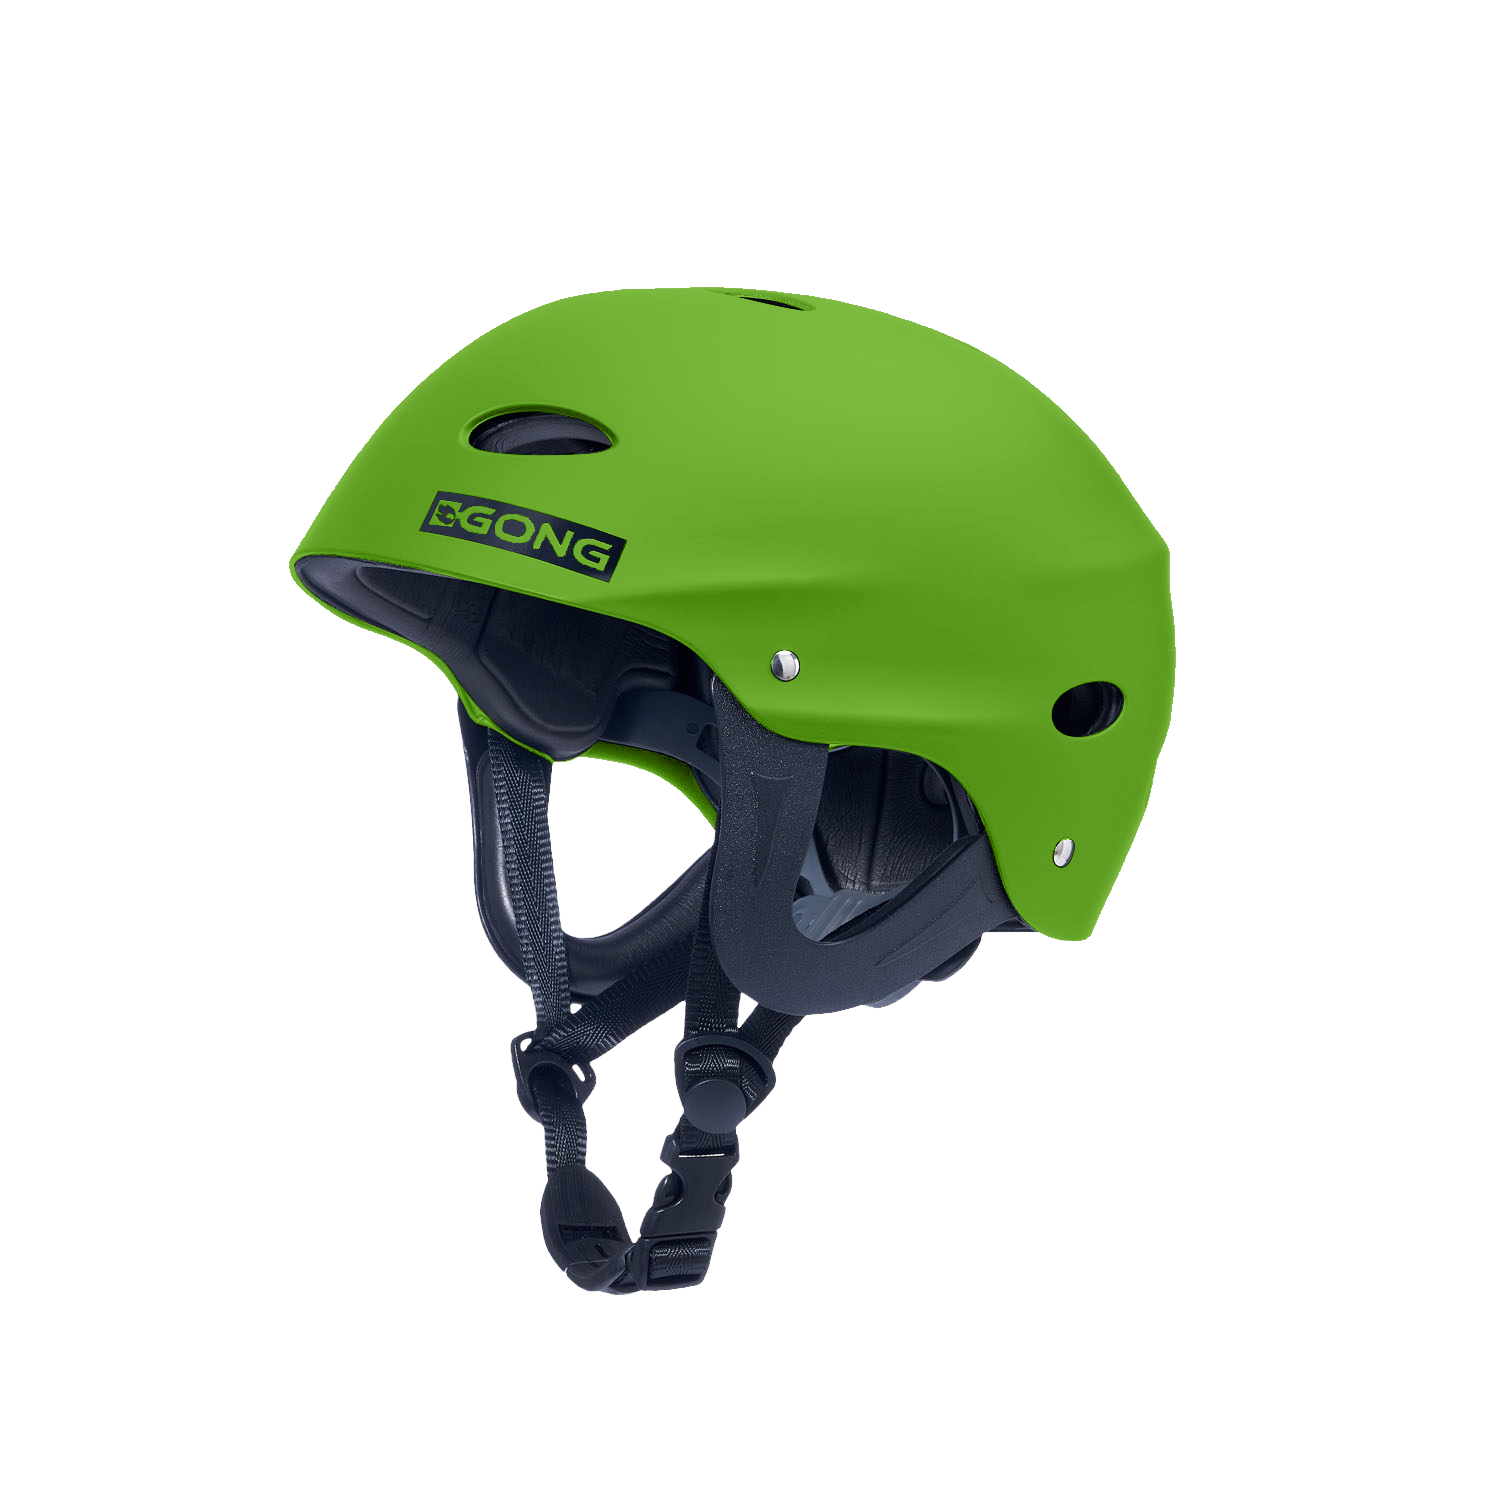 GONG | Protective Helmet